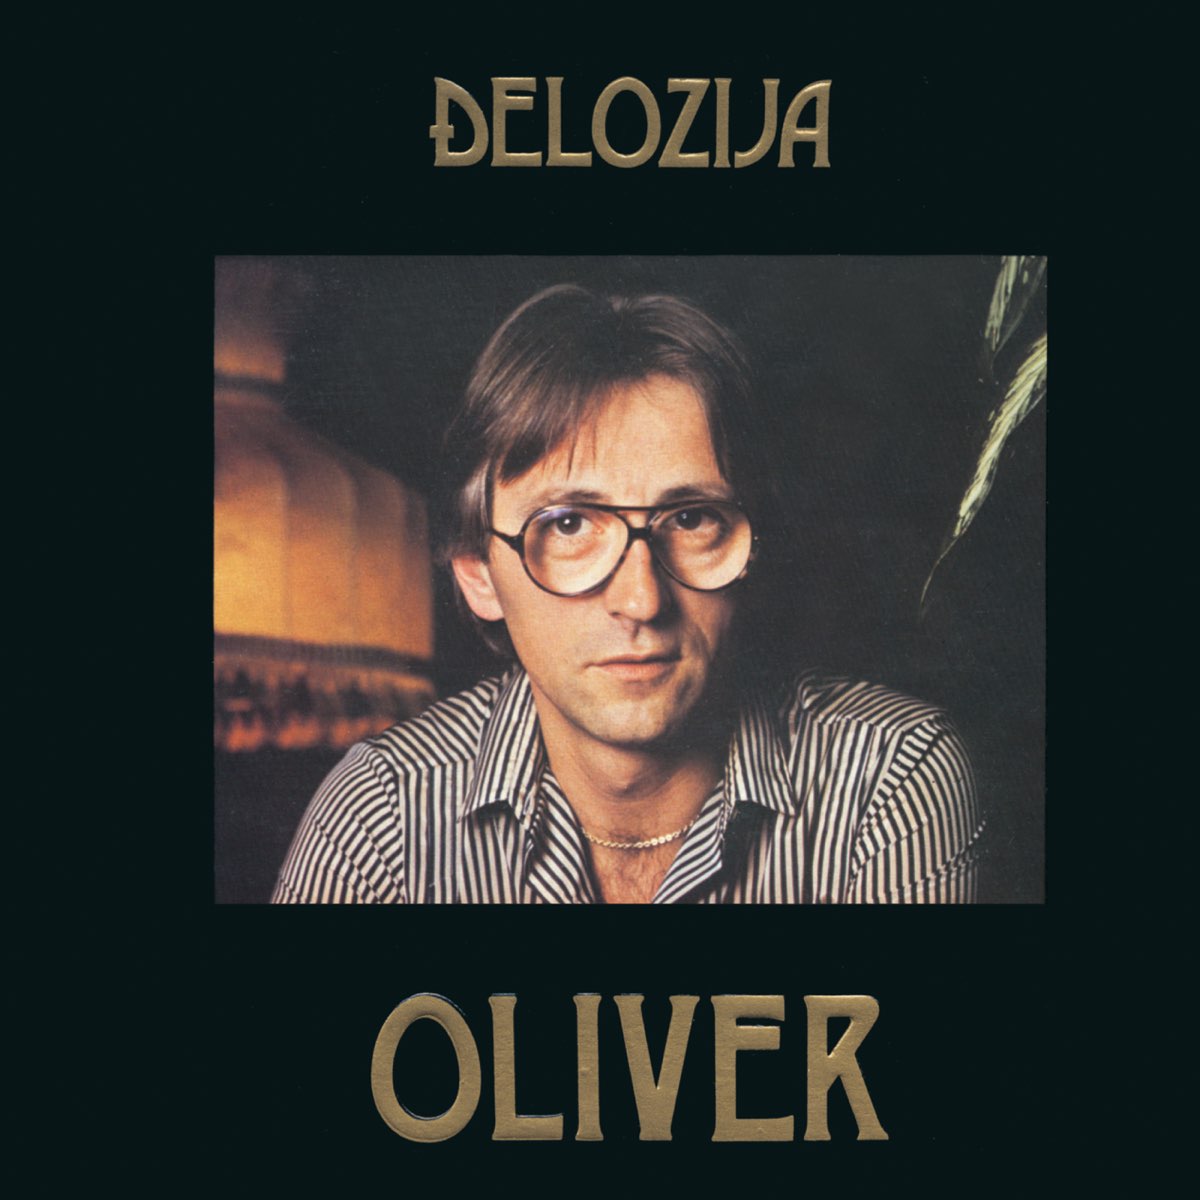 Songs oliver pjesma dragojević ljubavna Oliver